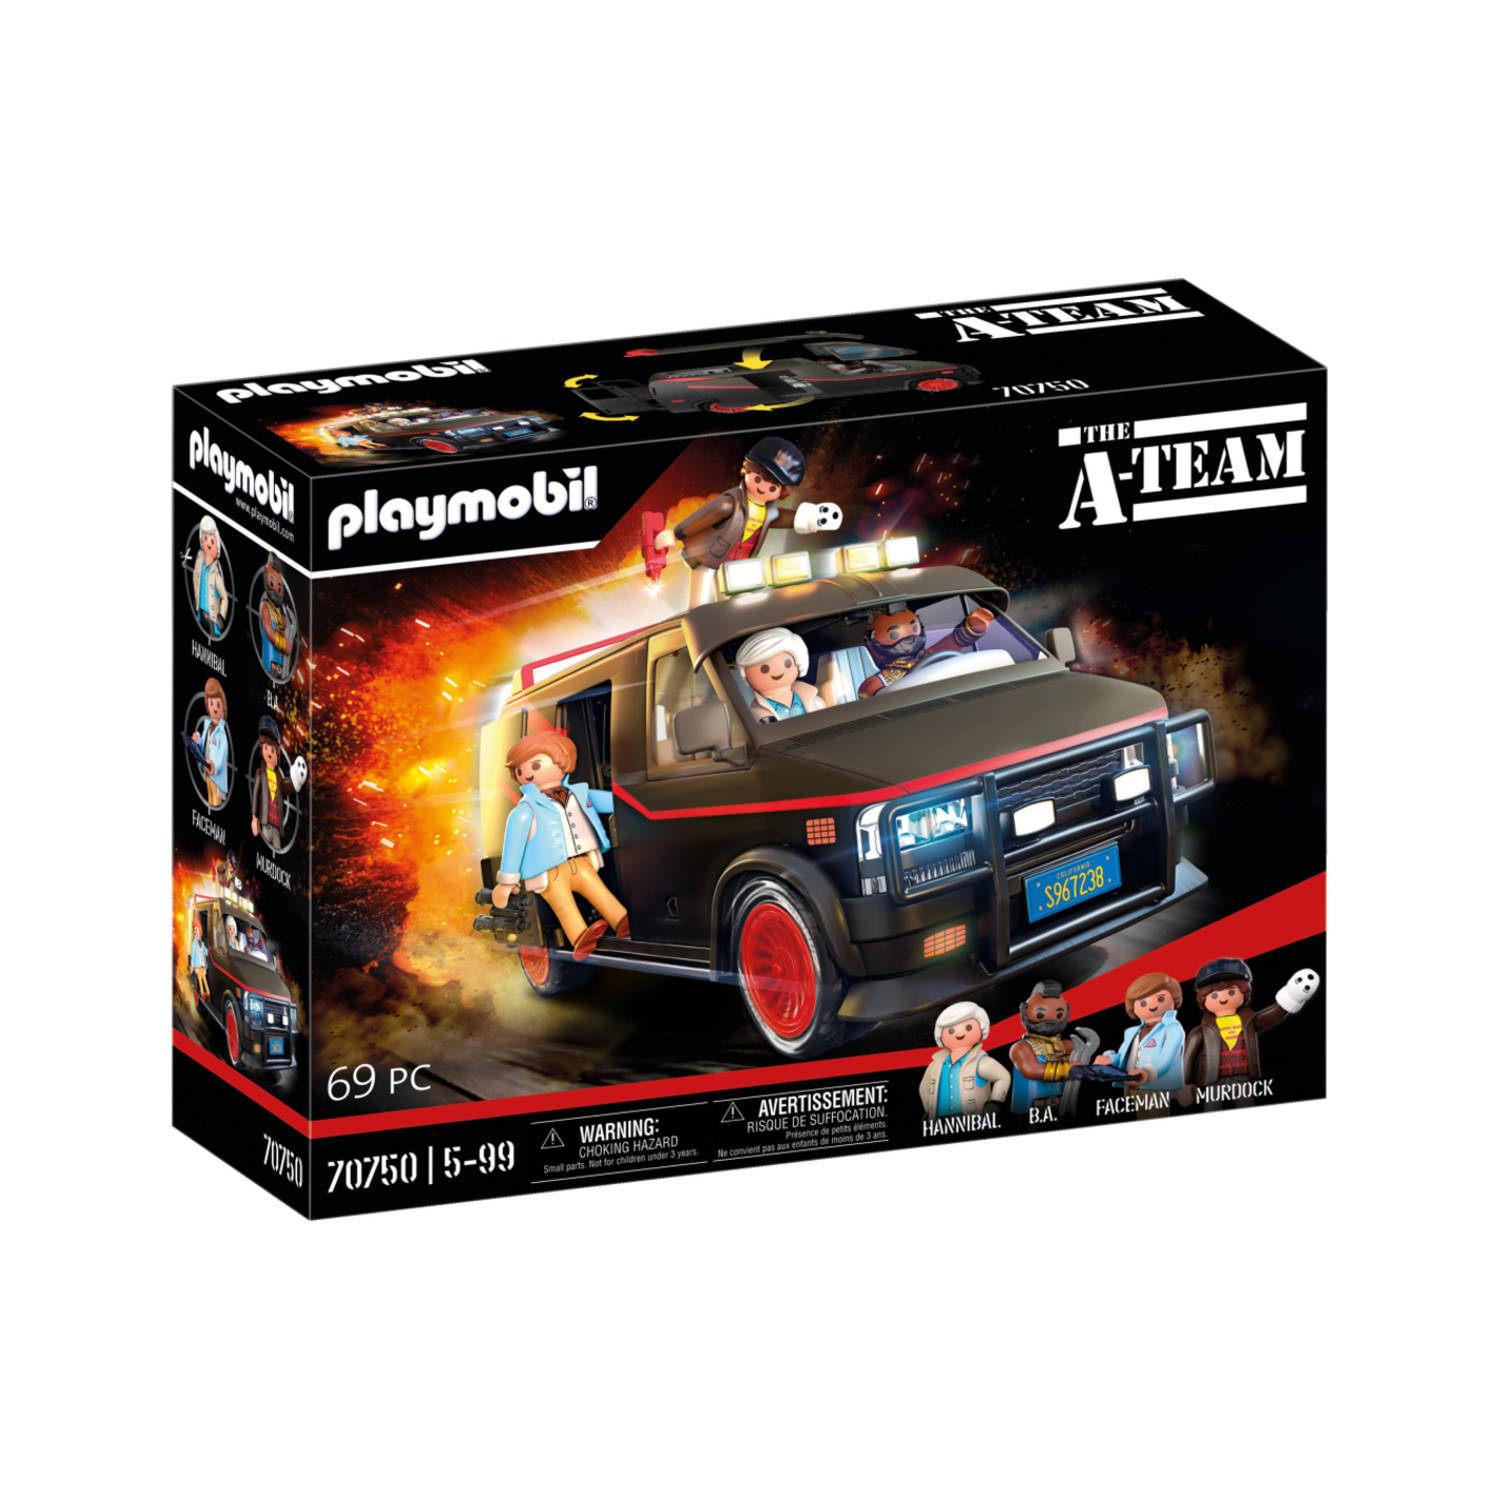 Playmobil® A-team 70750 De A-team bus